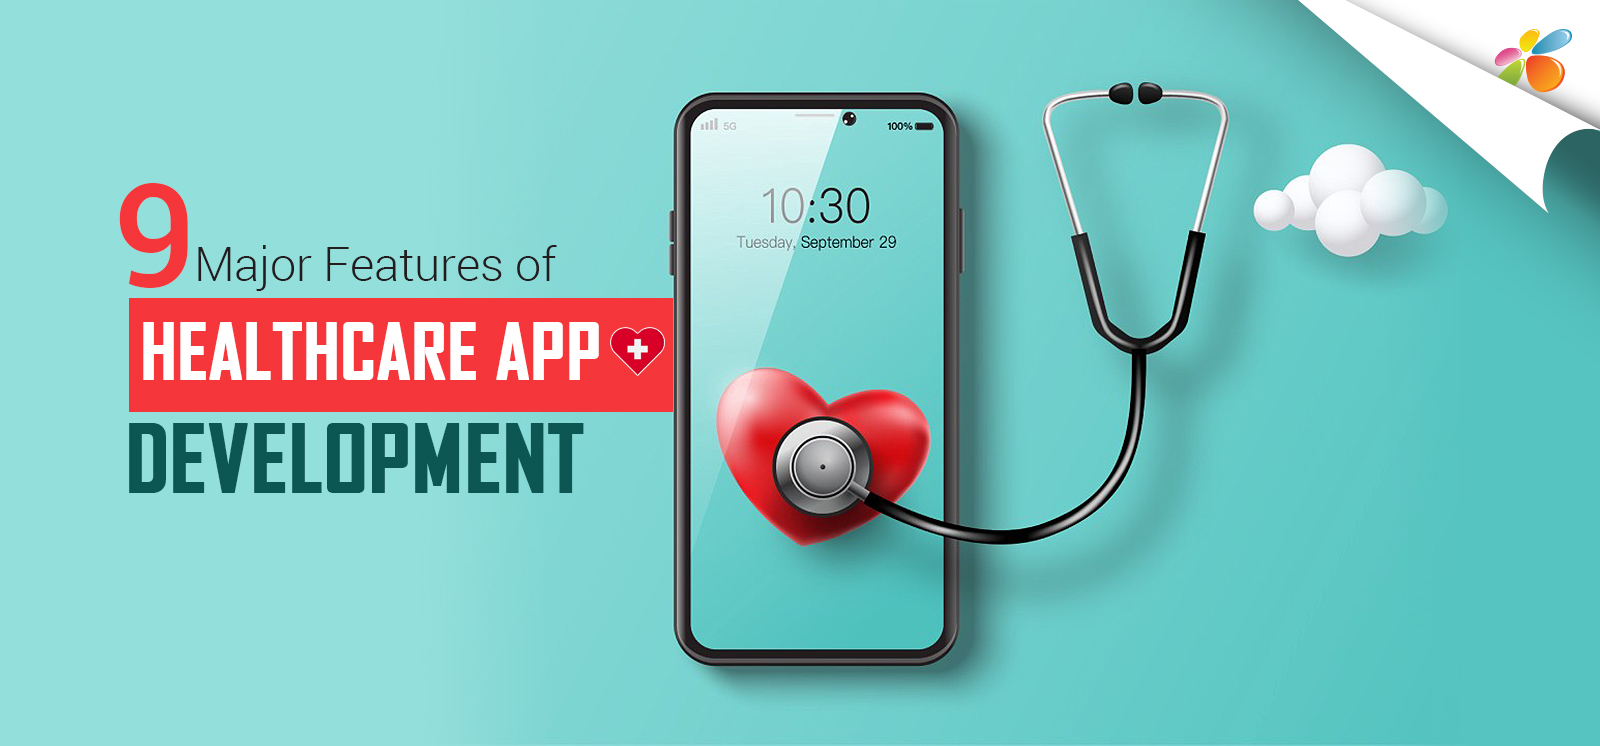 9 Major Features of Healthcare App Development